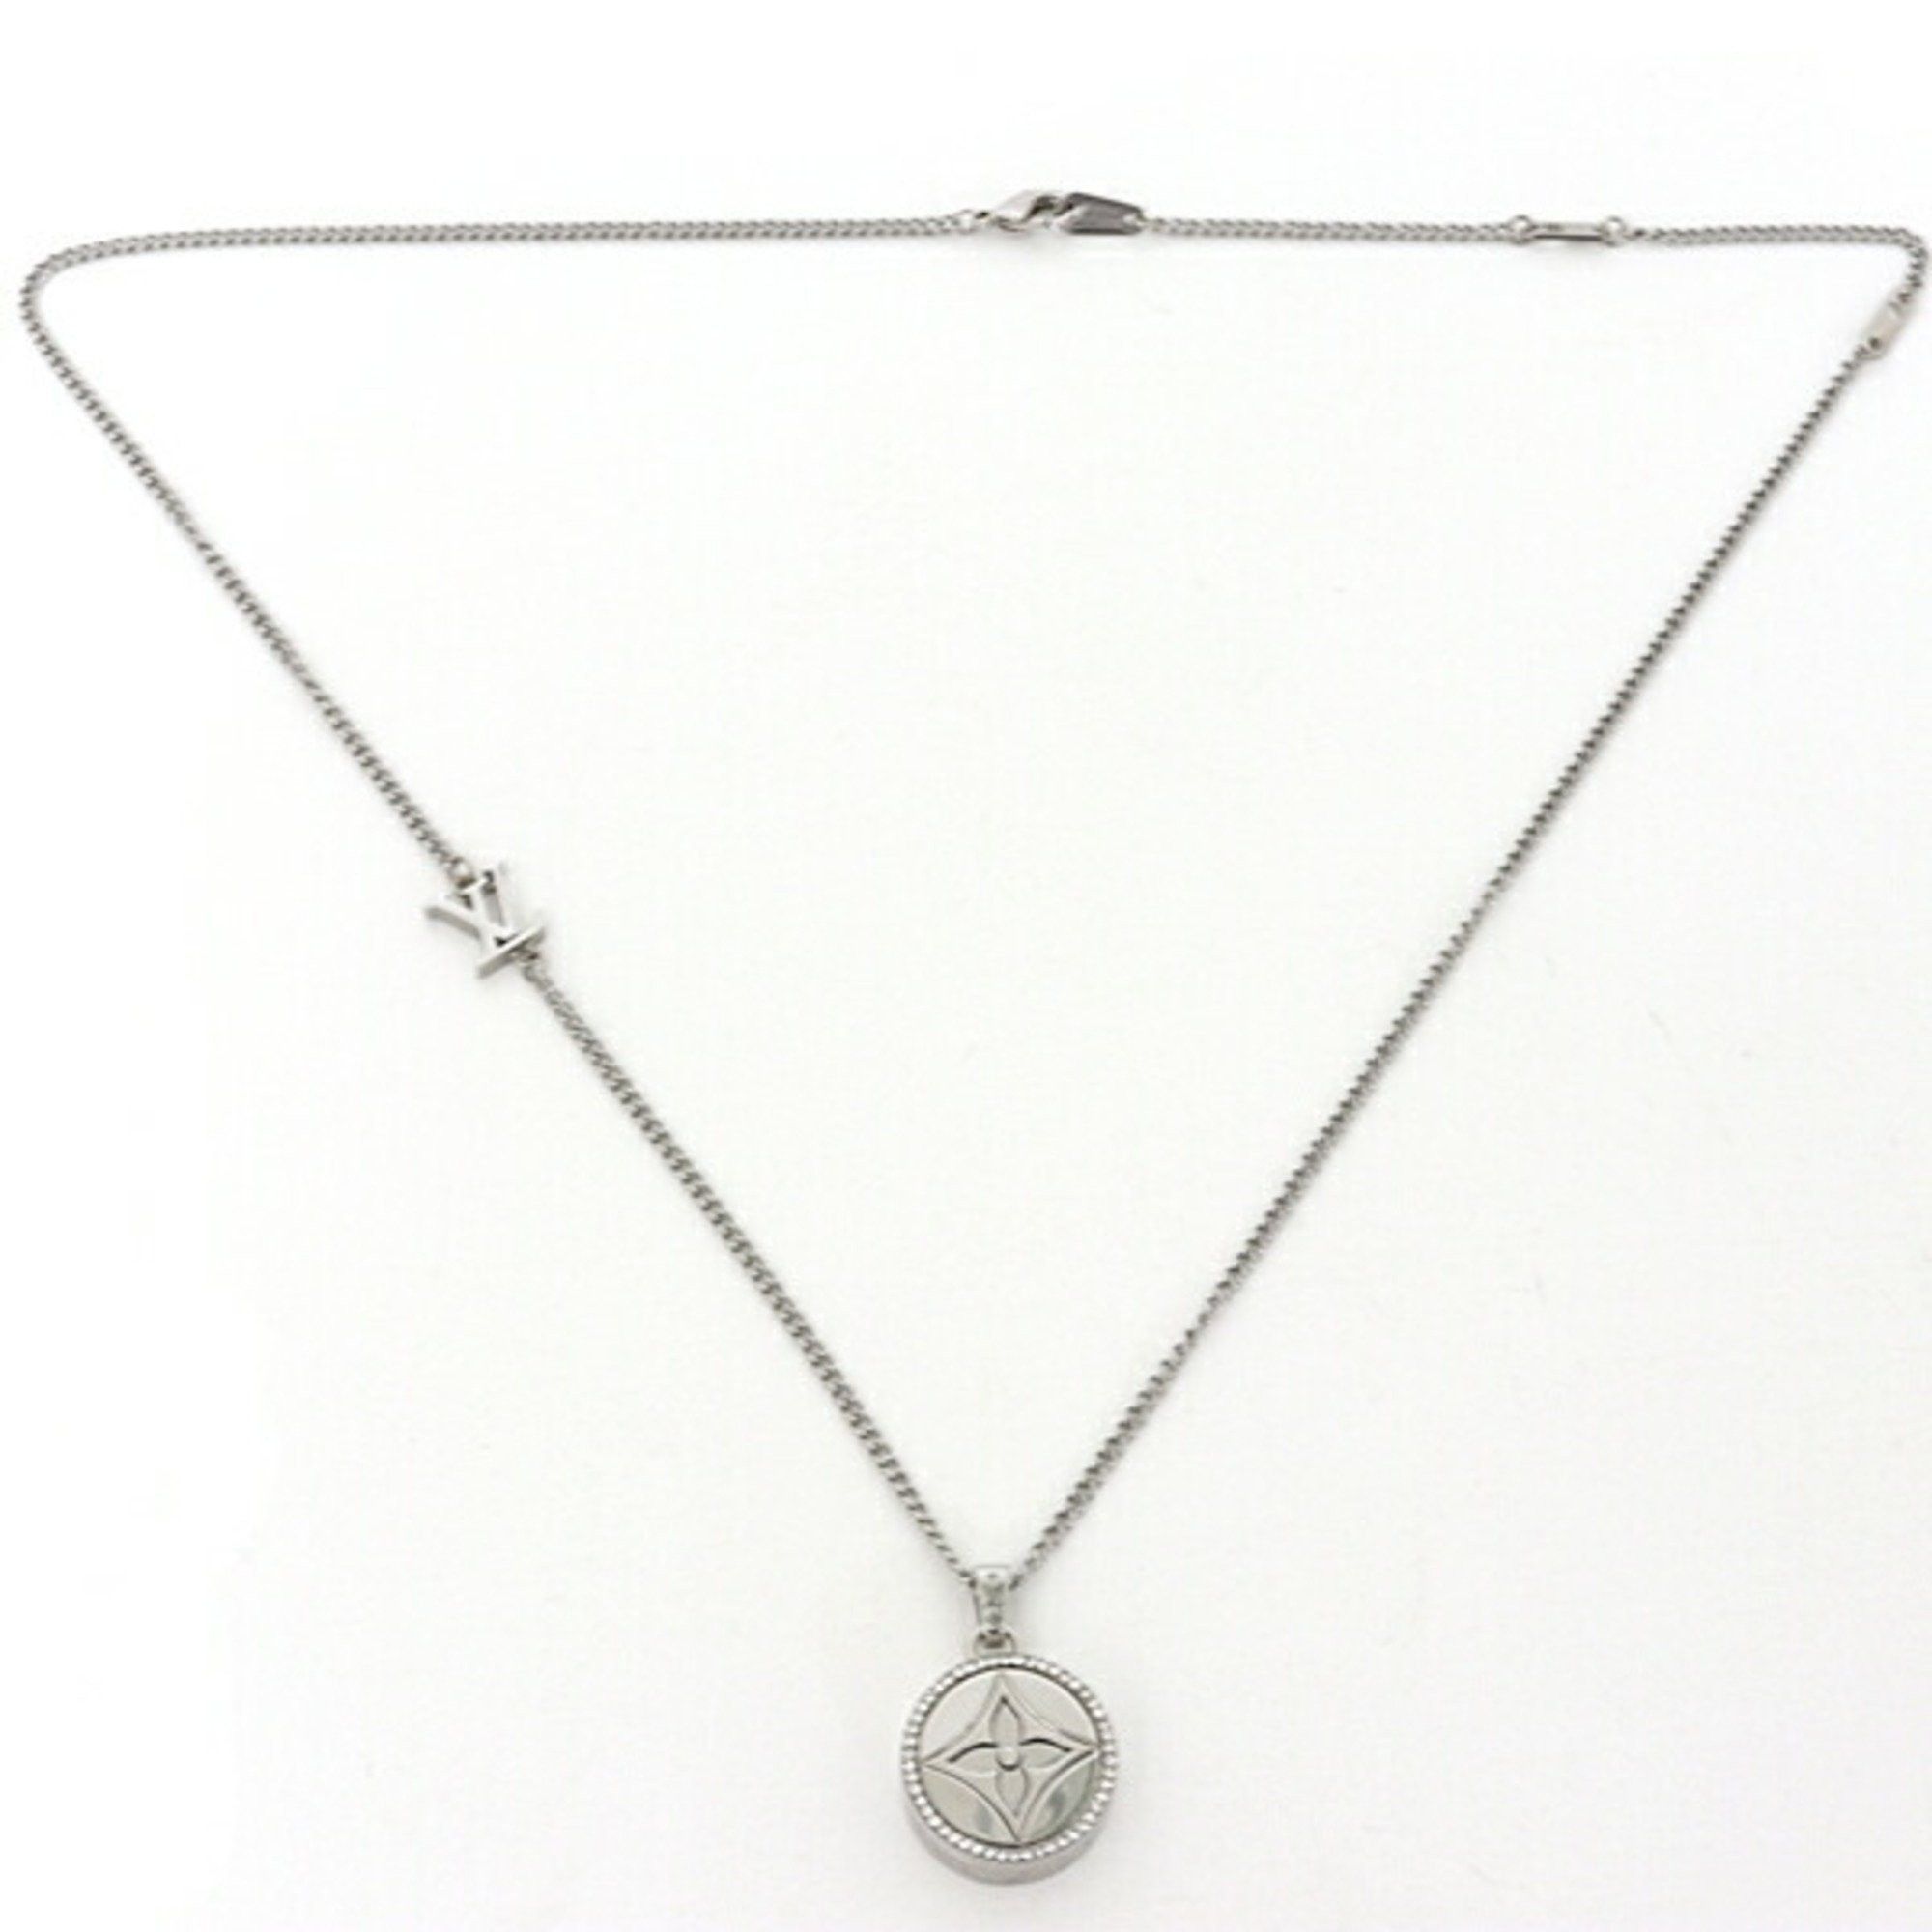 LOUIS VUITTON Necklace Pendant LV Vivienne Dark Silver Metal M00831  authentic